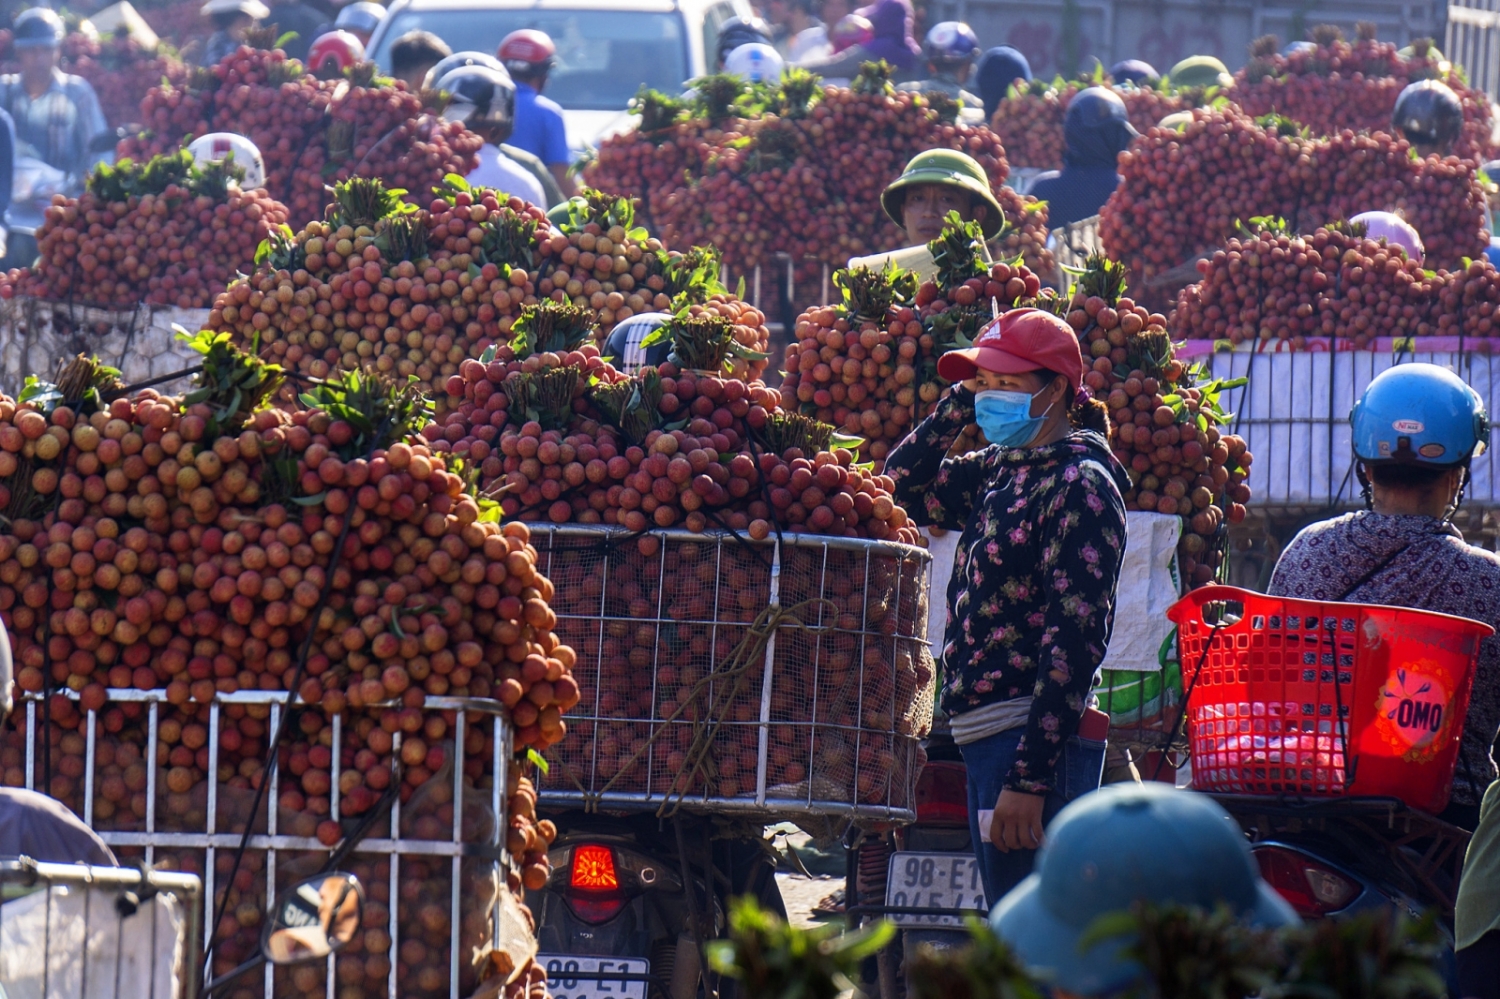 Phó Thủ tướng chỉ đạo hỗ trợ tiêu thụ nông sản tỉnh Bắc Giang